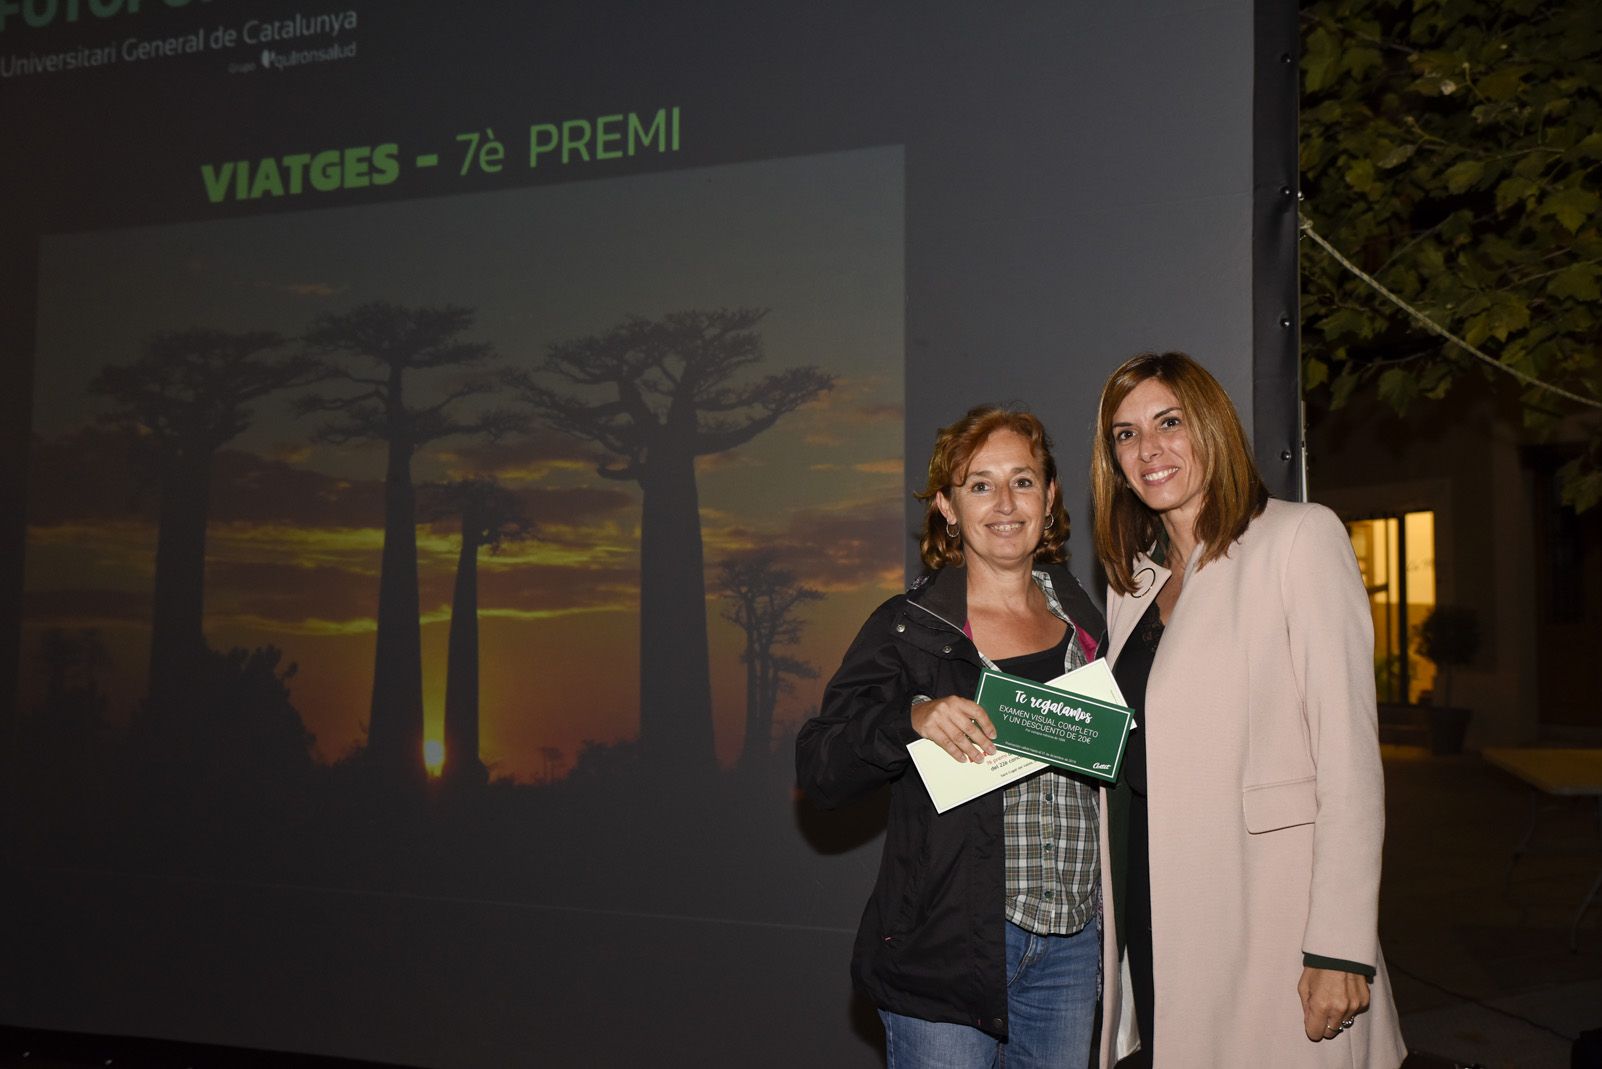 7è premi ‘Viatges’ Elena Maristany Bosch - Baobabs. Foto: Bernat Millet.